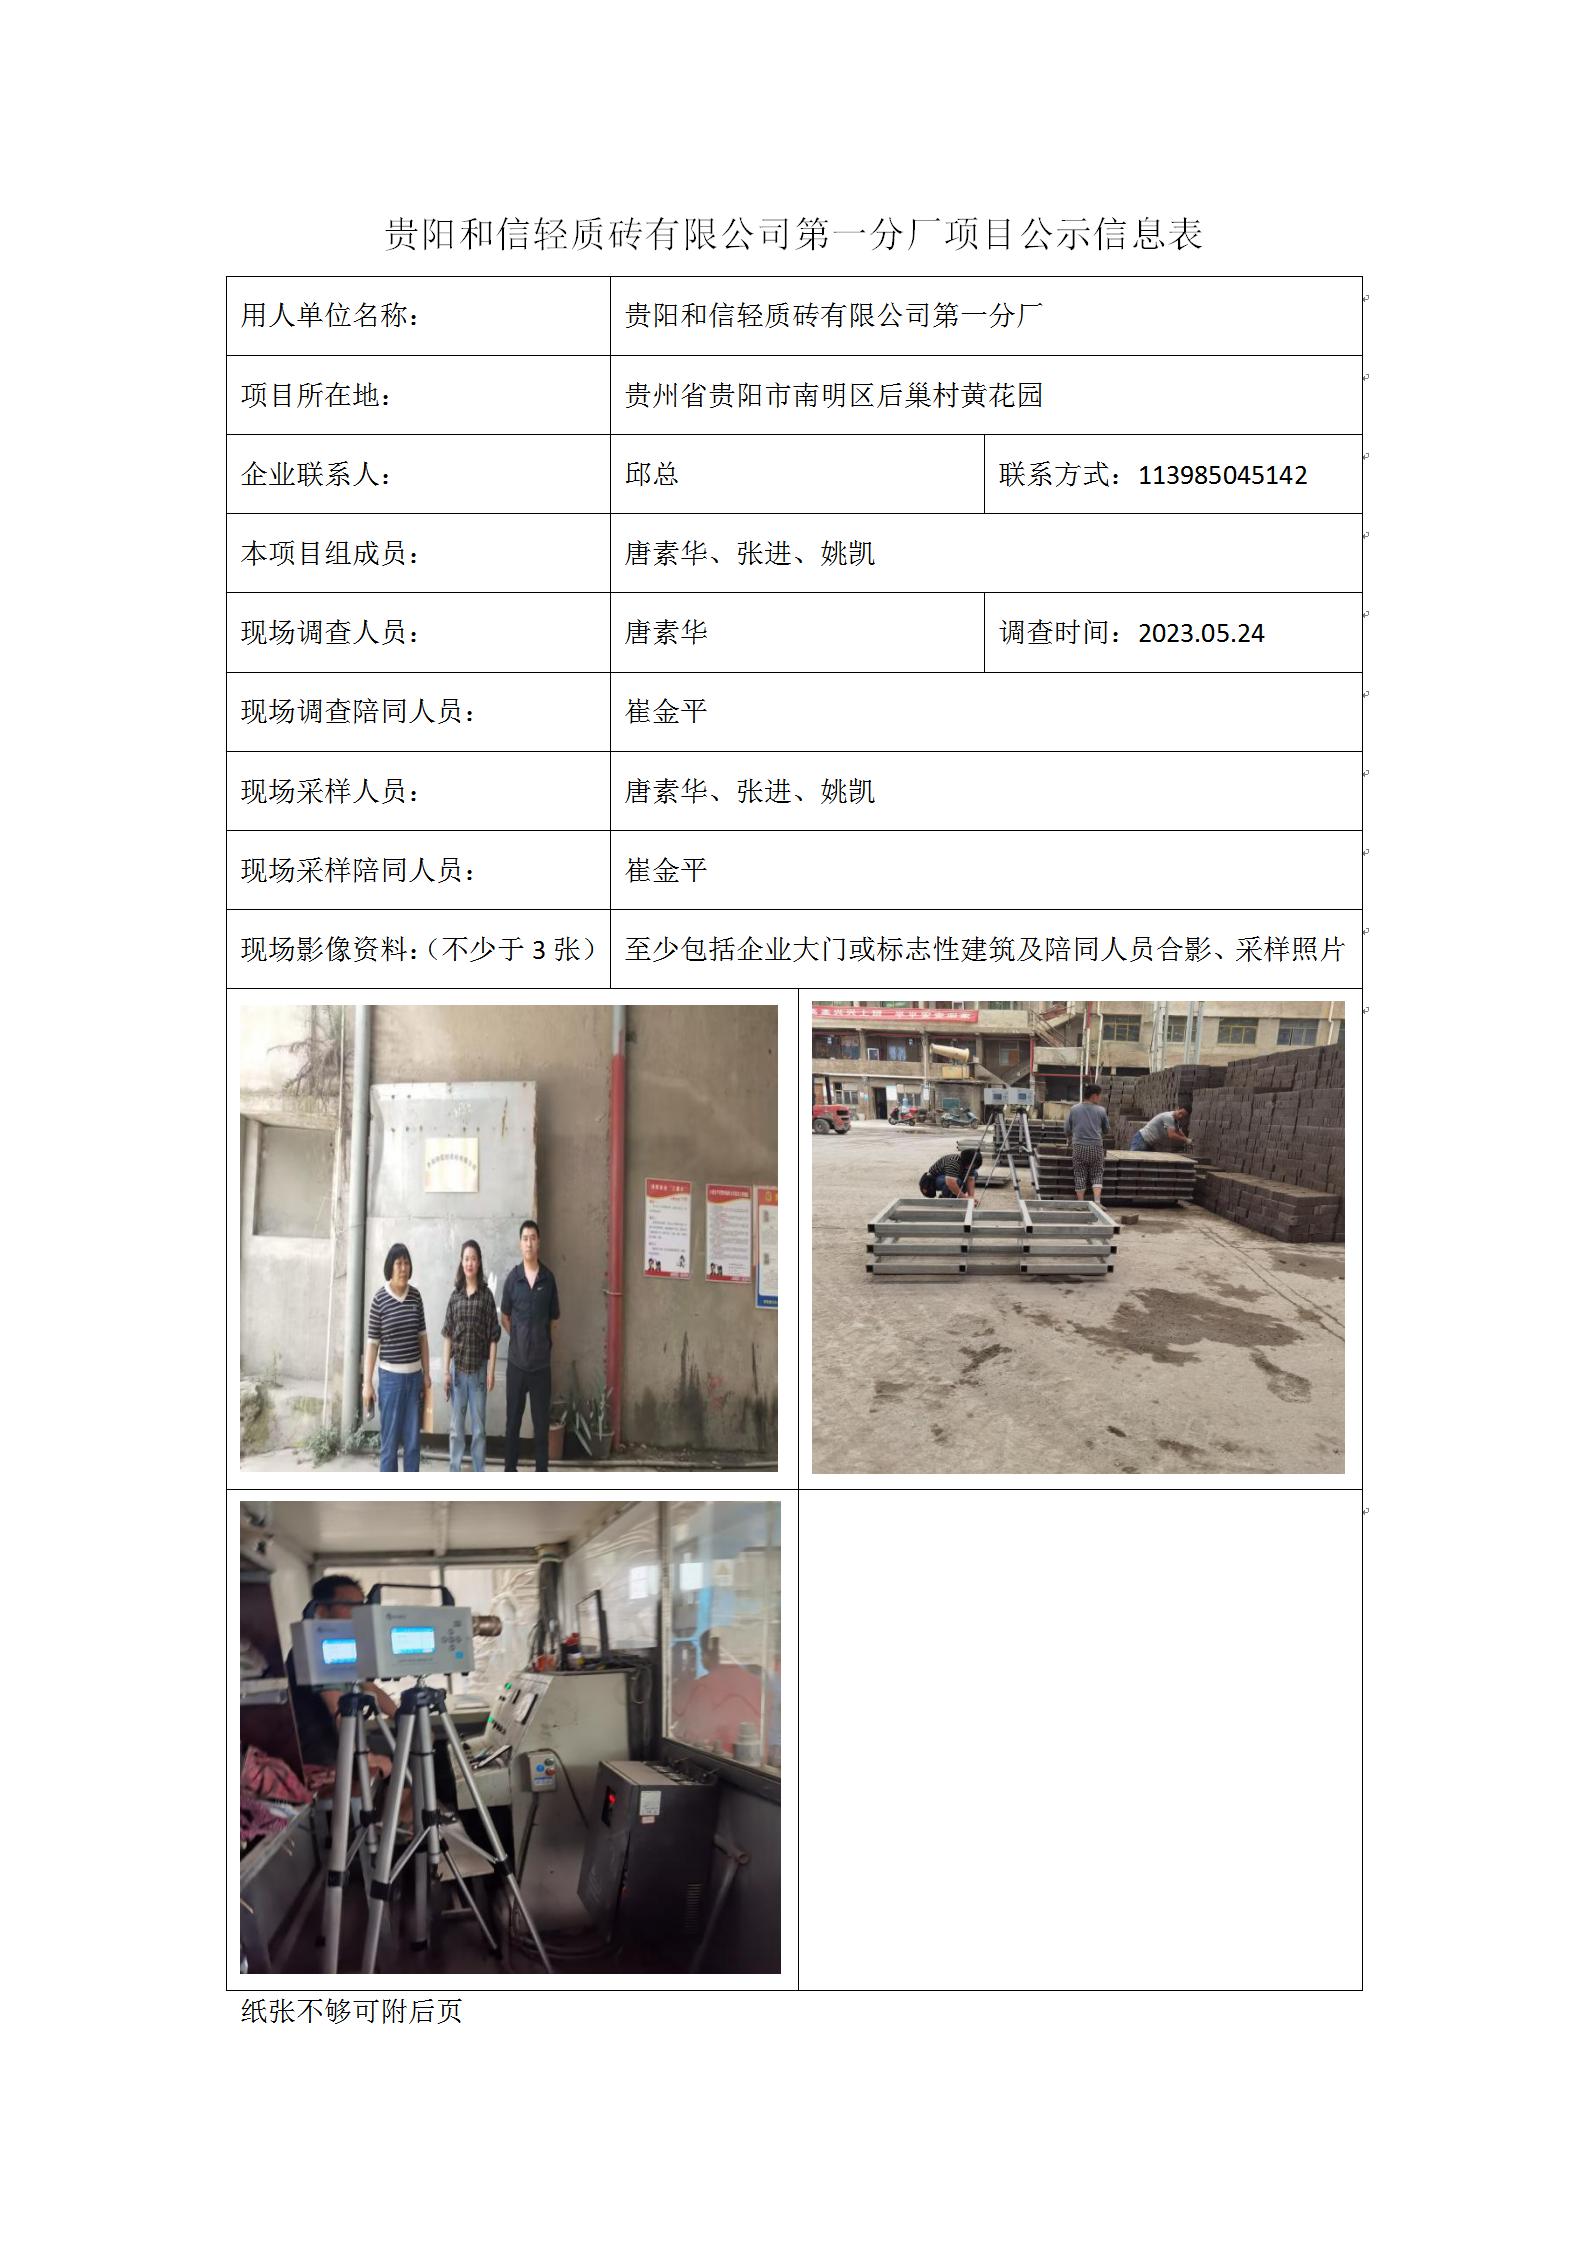 贵阳和信轻质砖有限公司第一分厂项目公示信息表_01.jpg